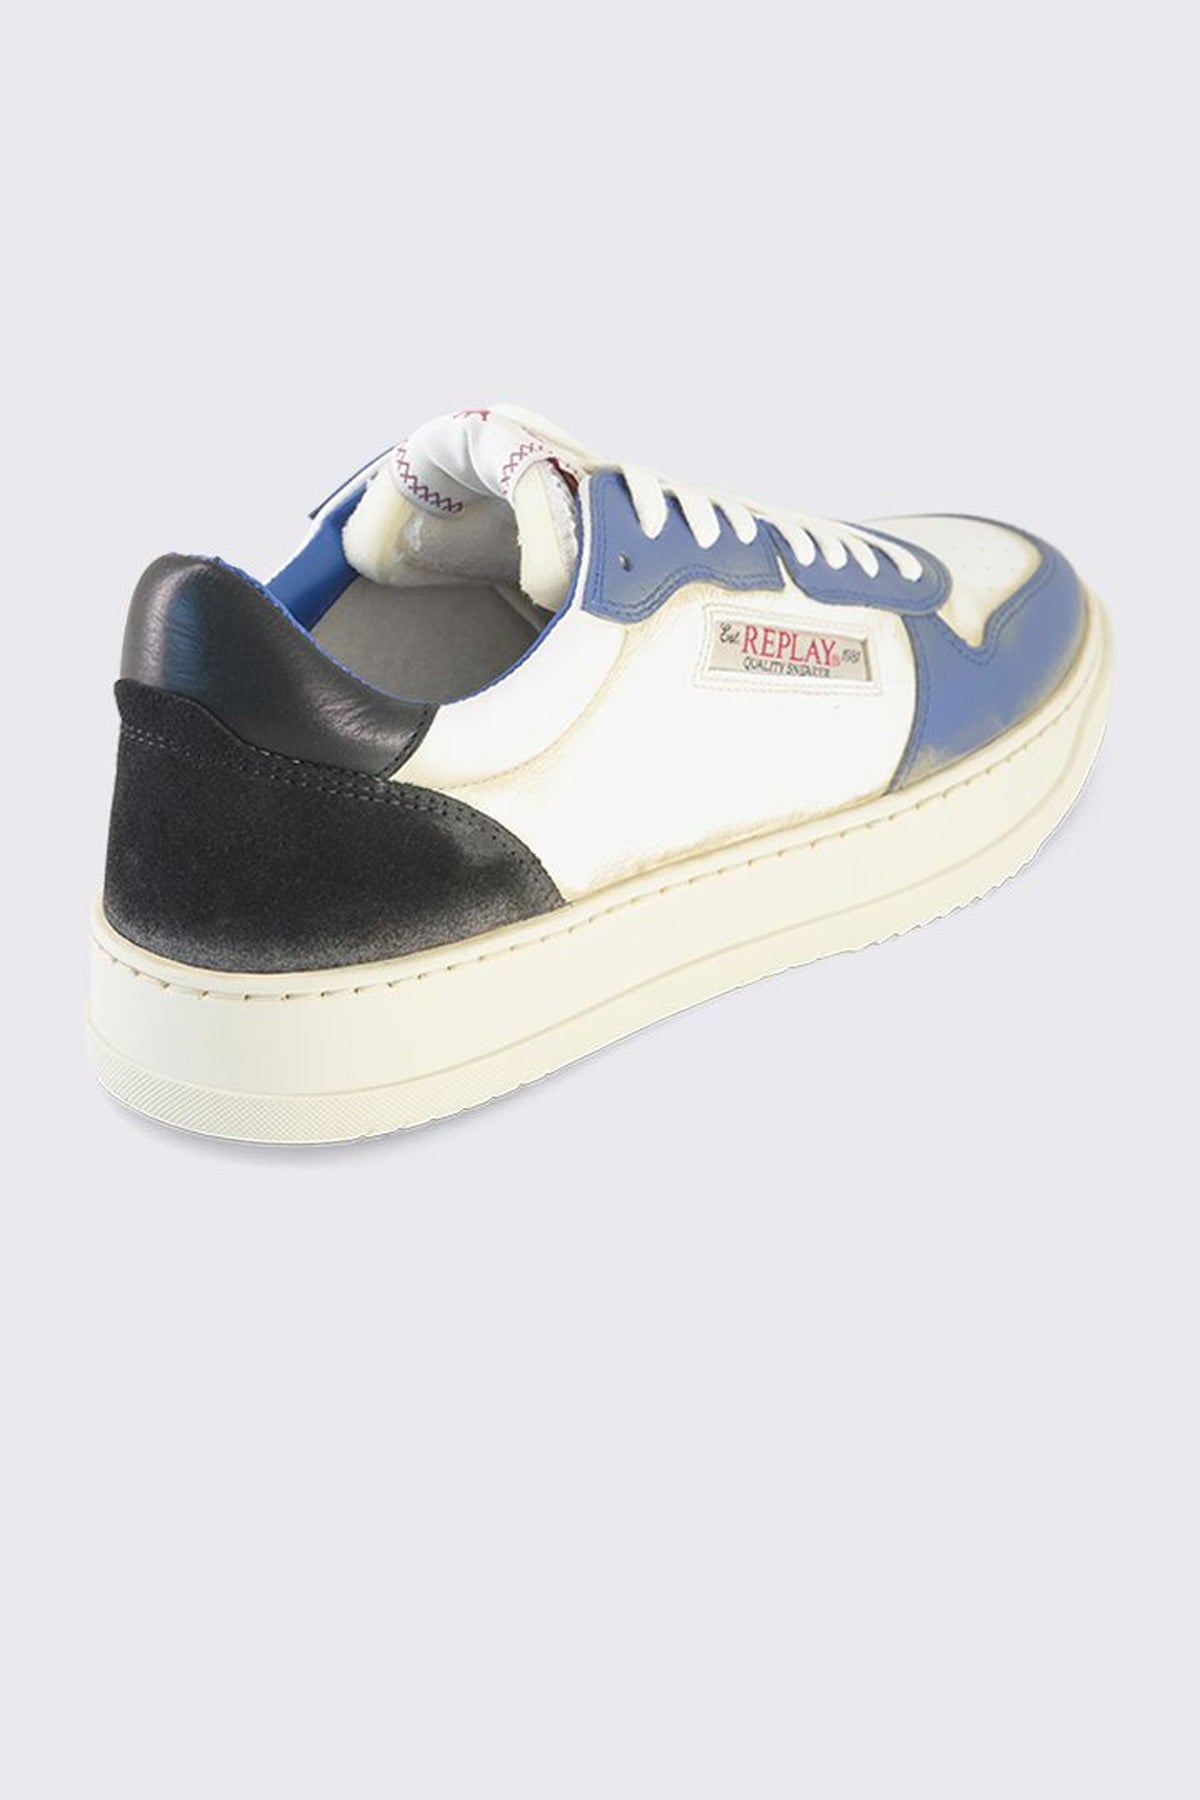 ריפליי נעלי סניקרס Reload Fluid בצבע לבן וכחול לגברים-Replay-40-נאקו